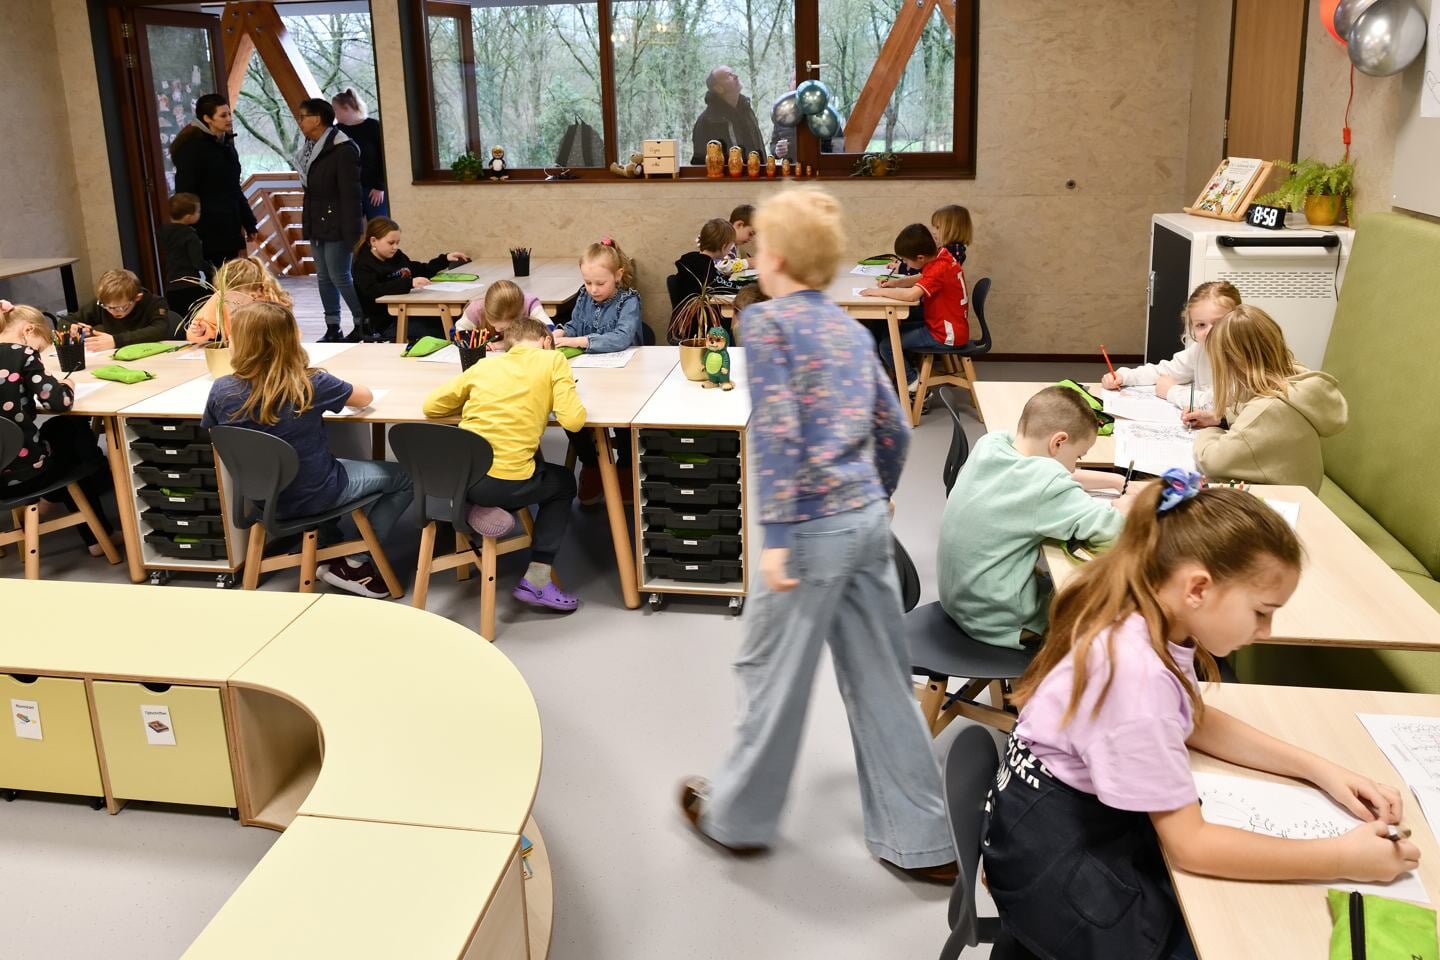 Basisschool BuitensteBinnen viert opening met kinderen en ouders